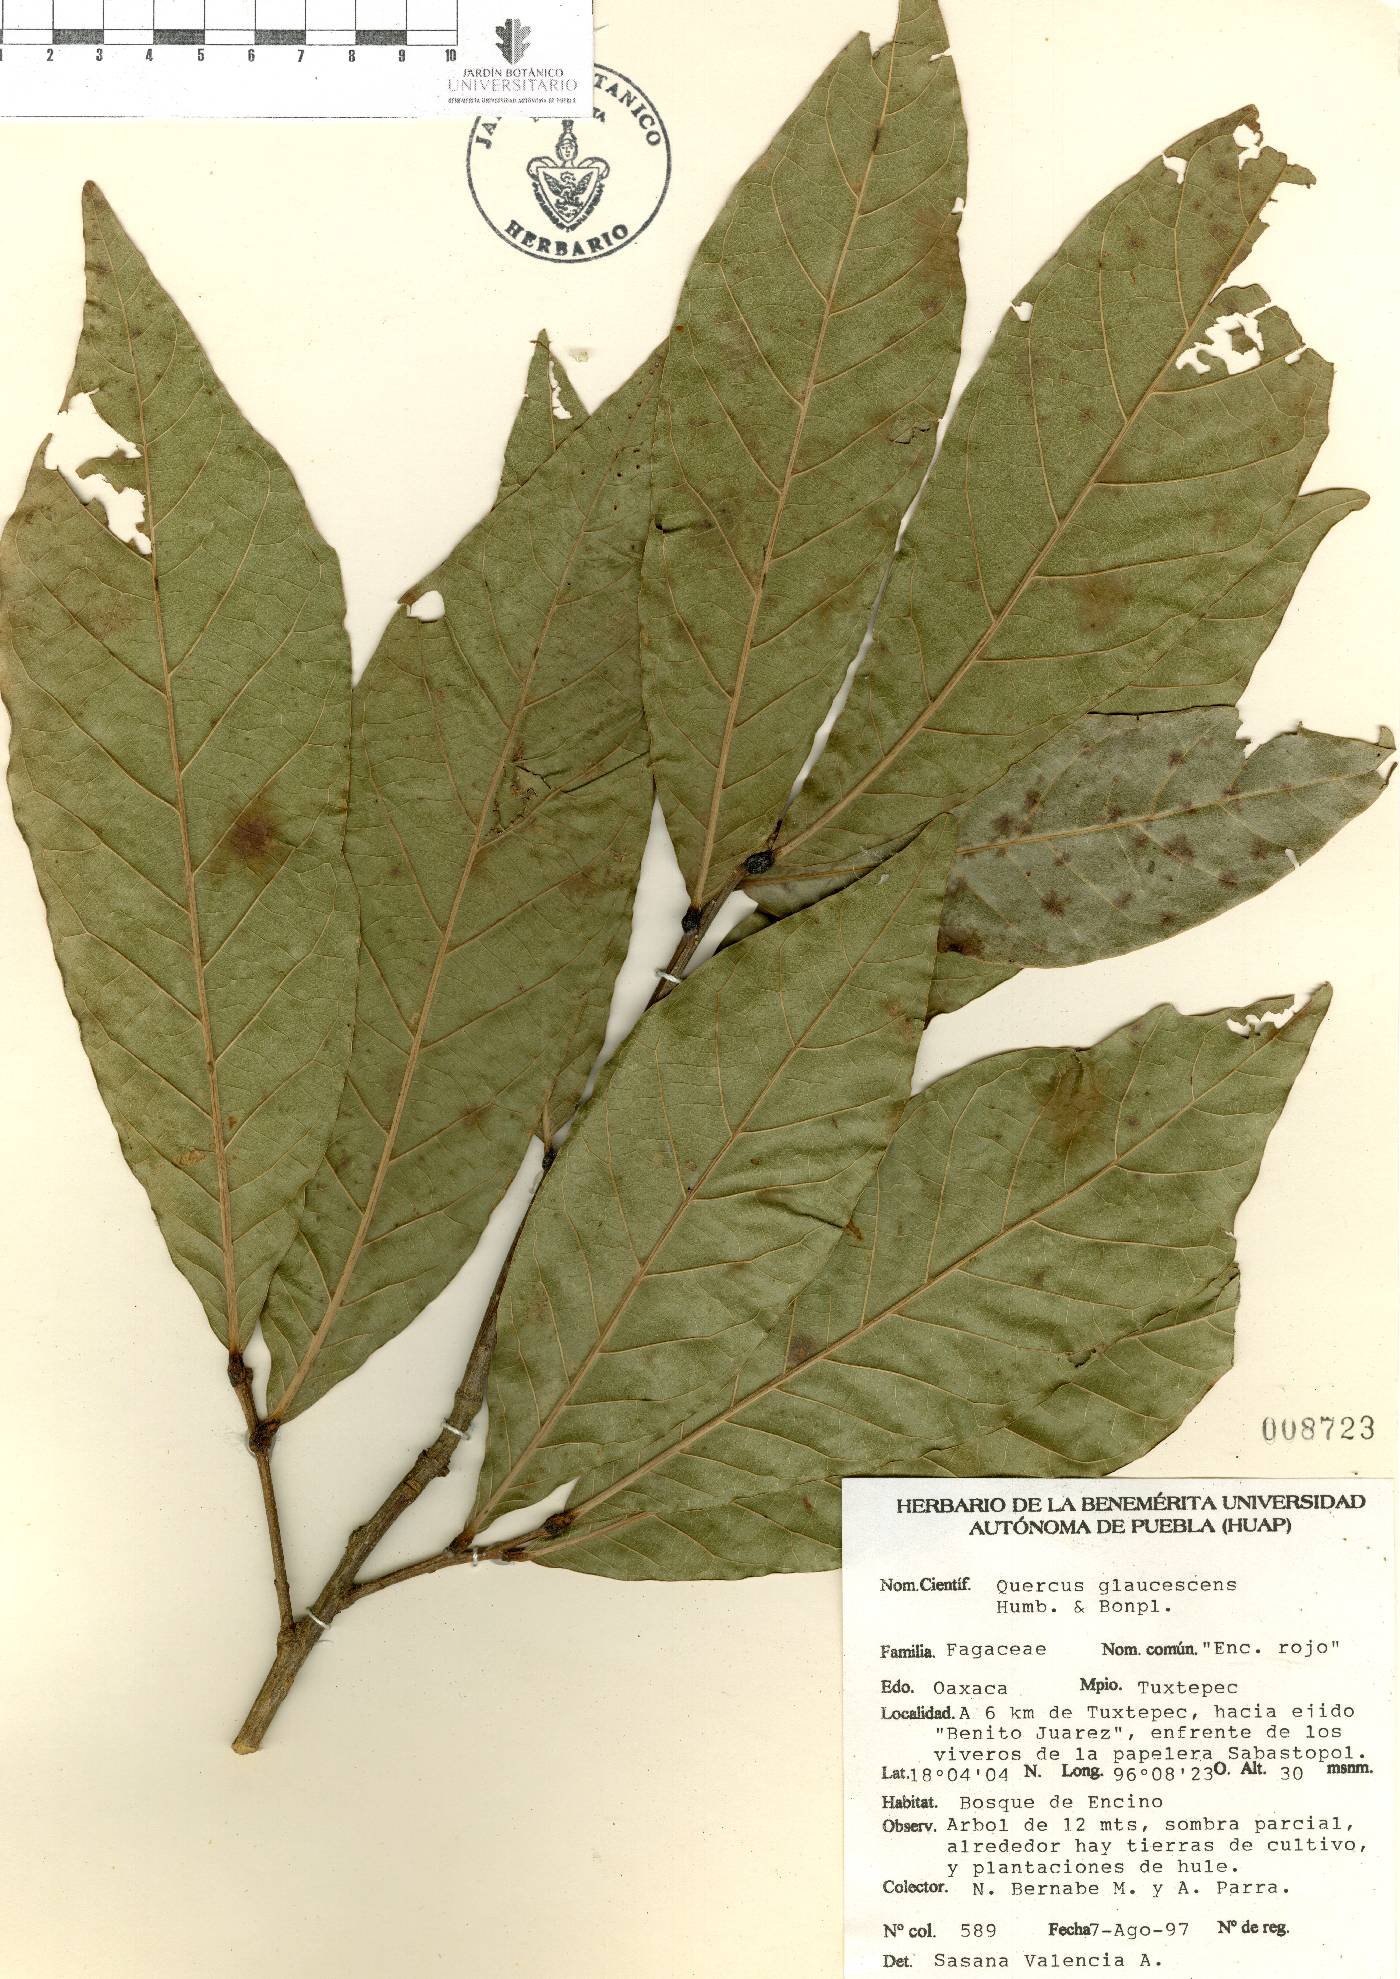 Quercus glaucescens image